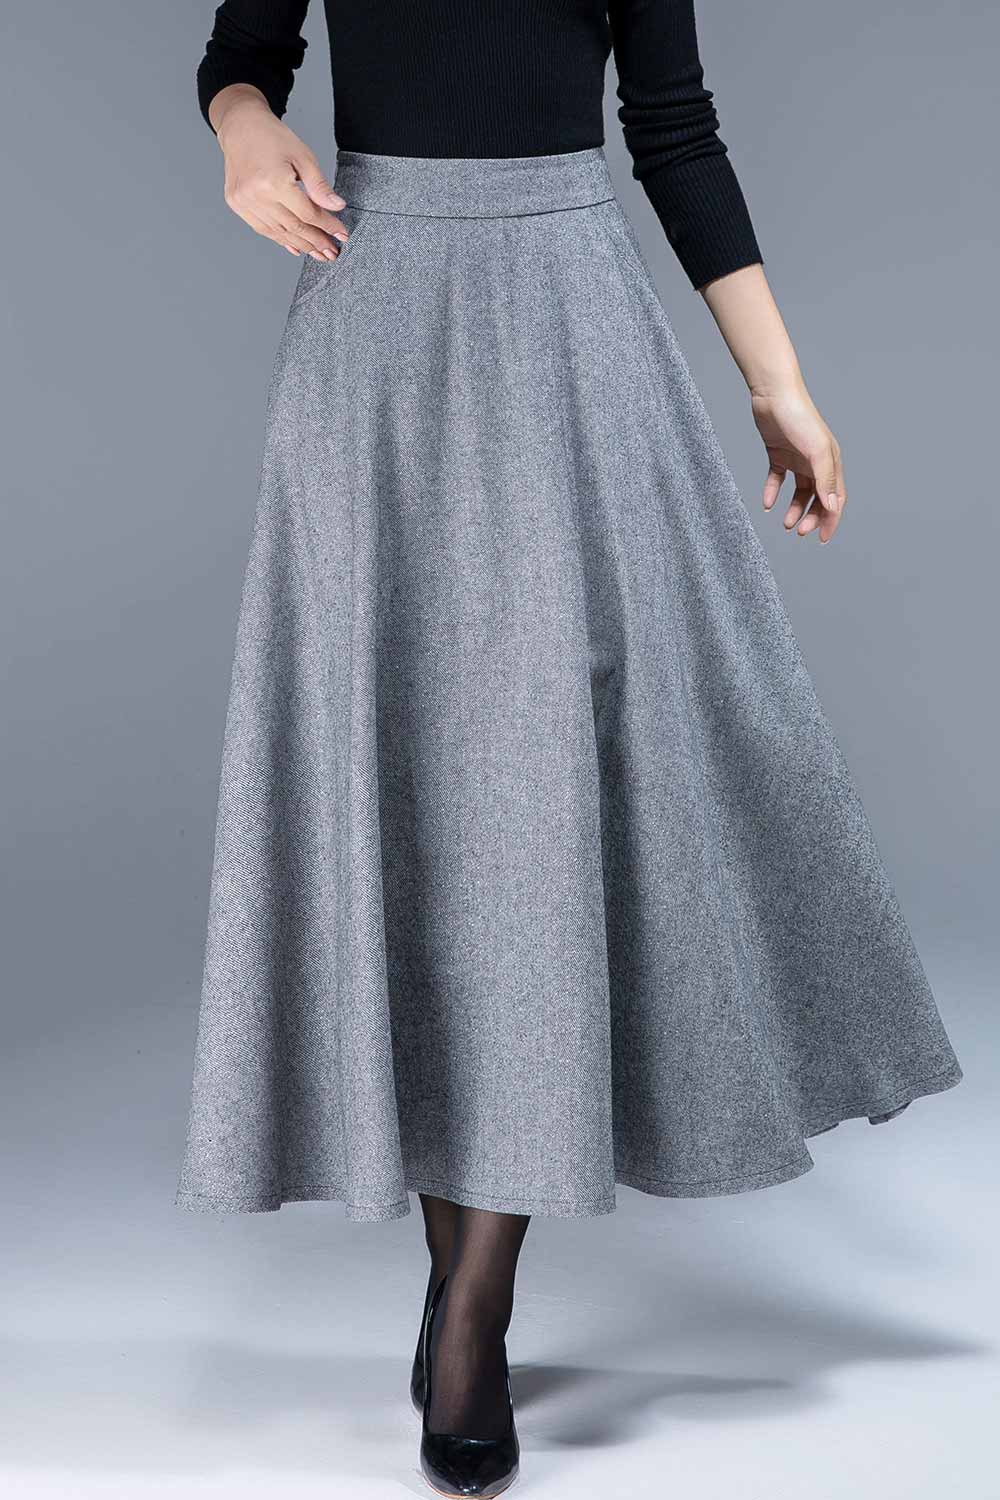 gray wool skirt, a line skirt, classic skirt, elegant skirt, skirt with pockets 1805#